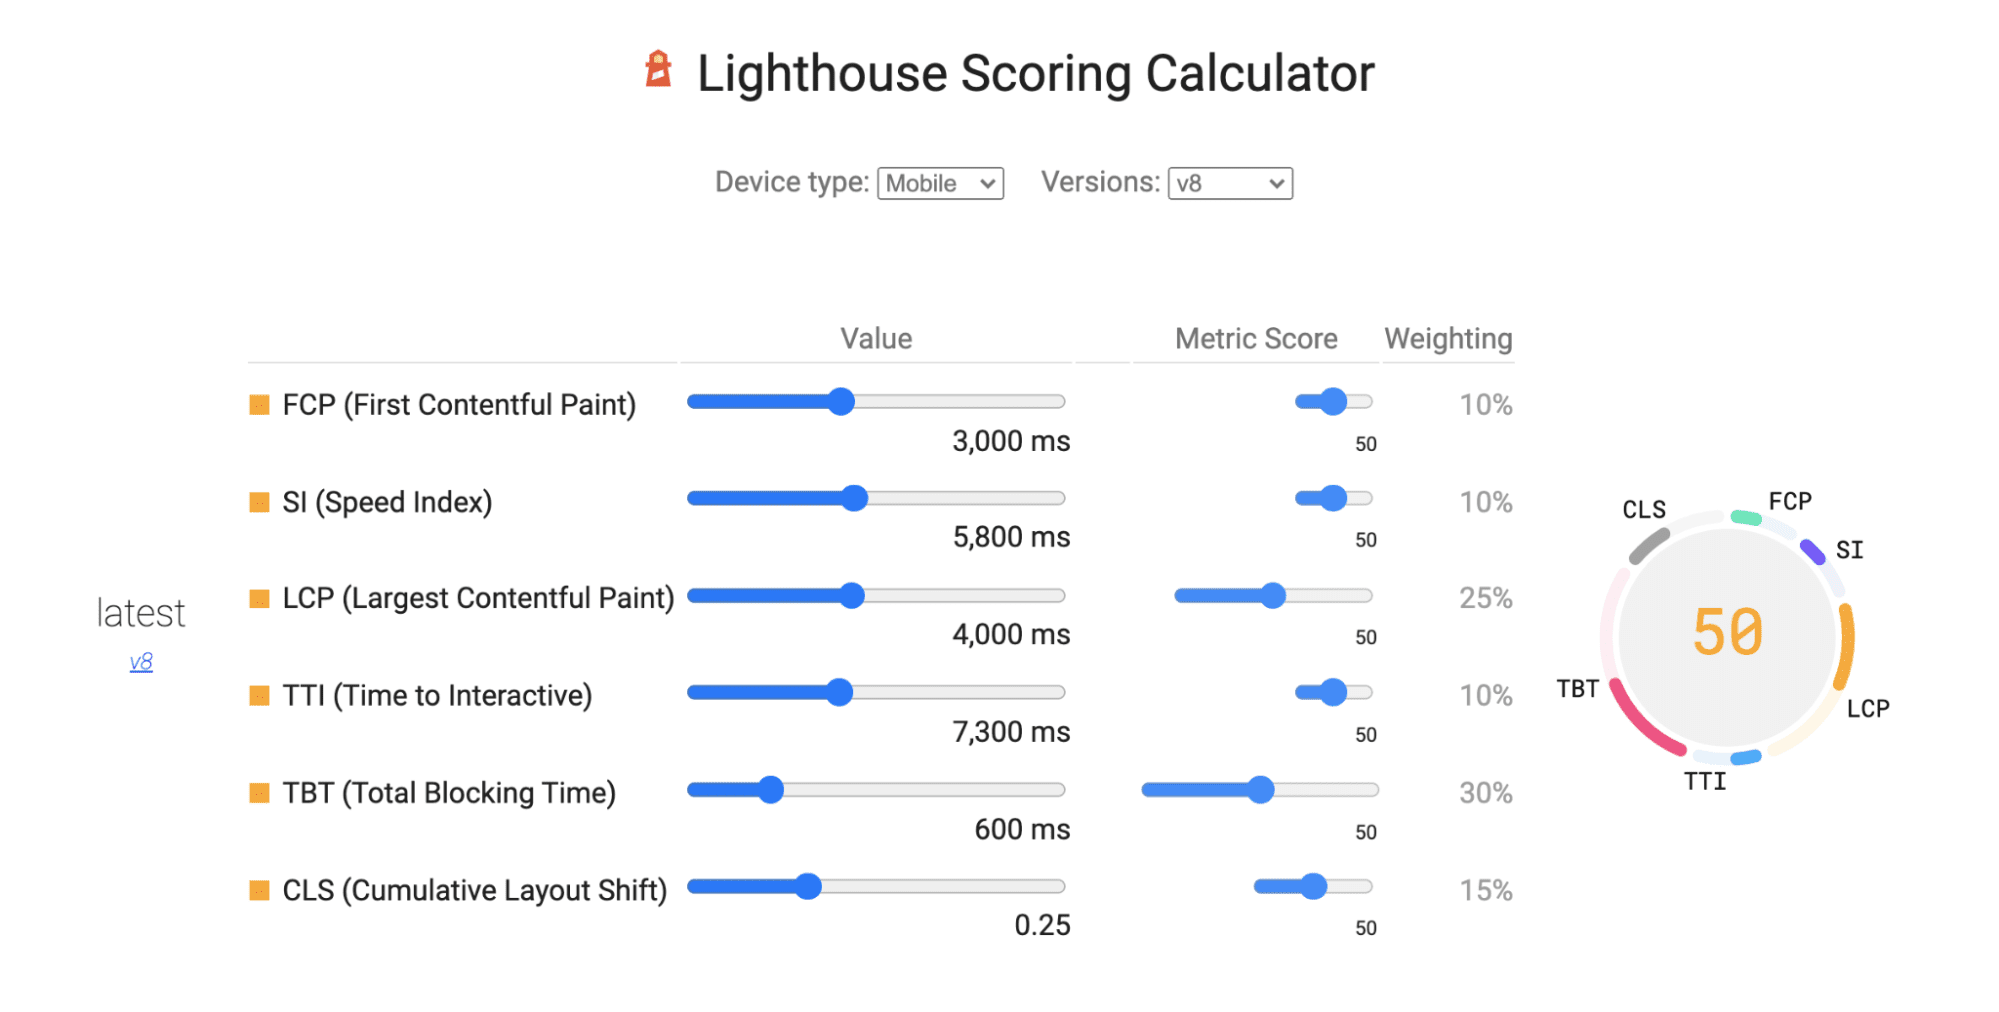 Calculadora de puntuación de Lighthouse